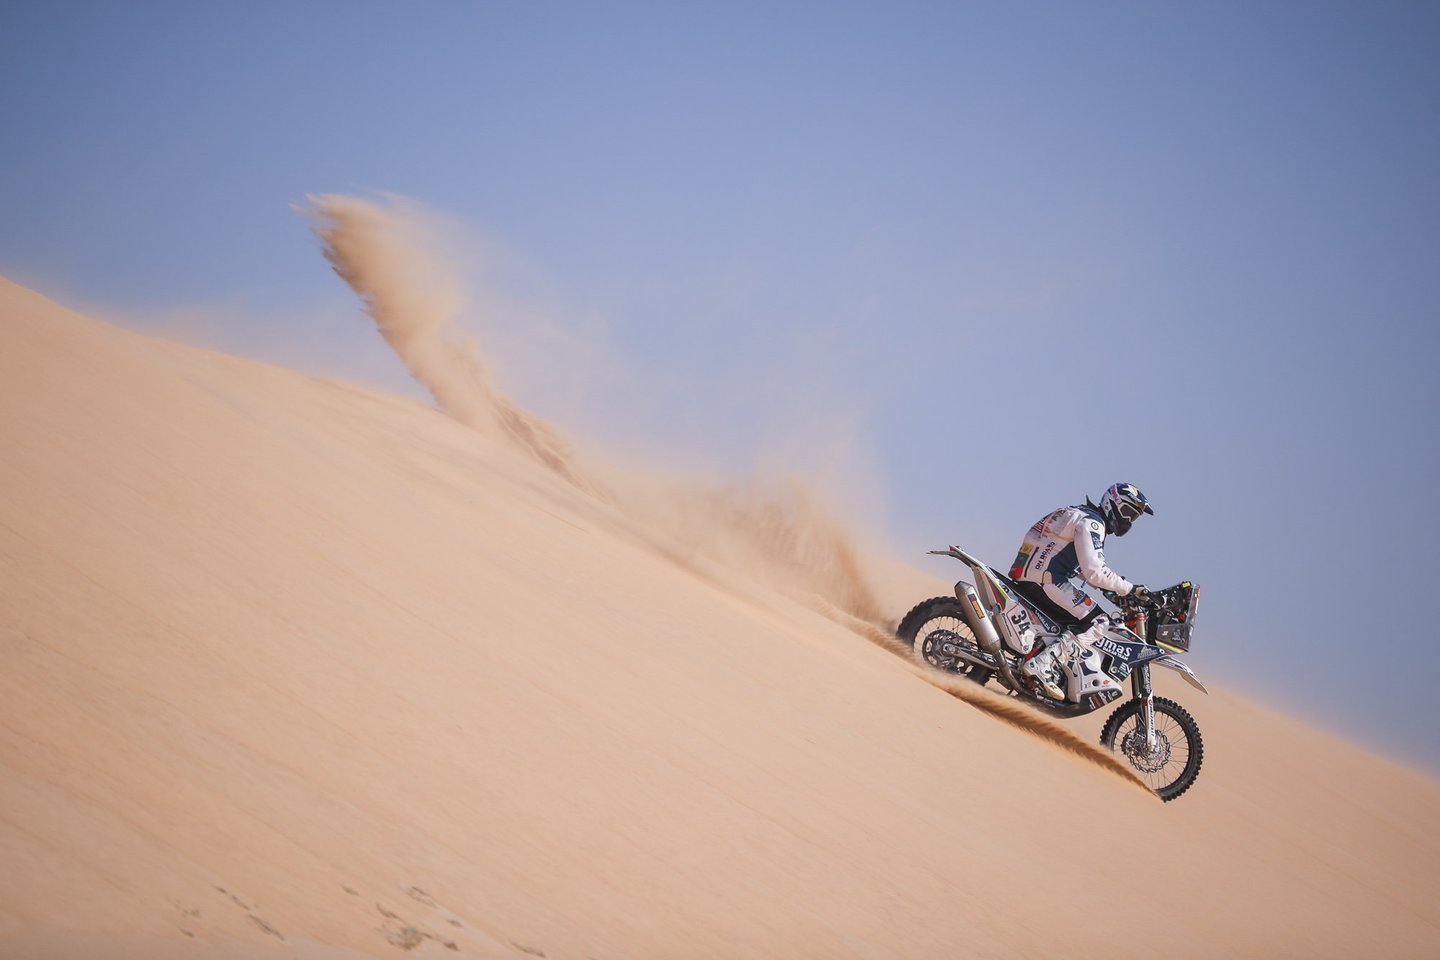  Arūnas Gelažninkas prieš paskutinį etapą Dakaro ralyje yra 30-as.<br> Zigmas Dakar team nuotr.